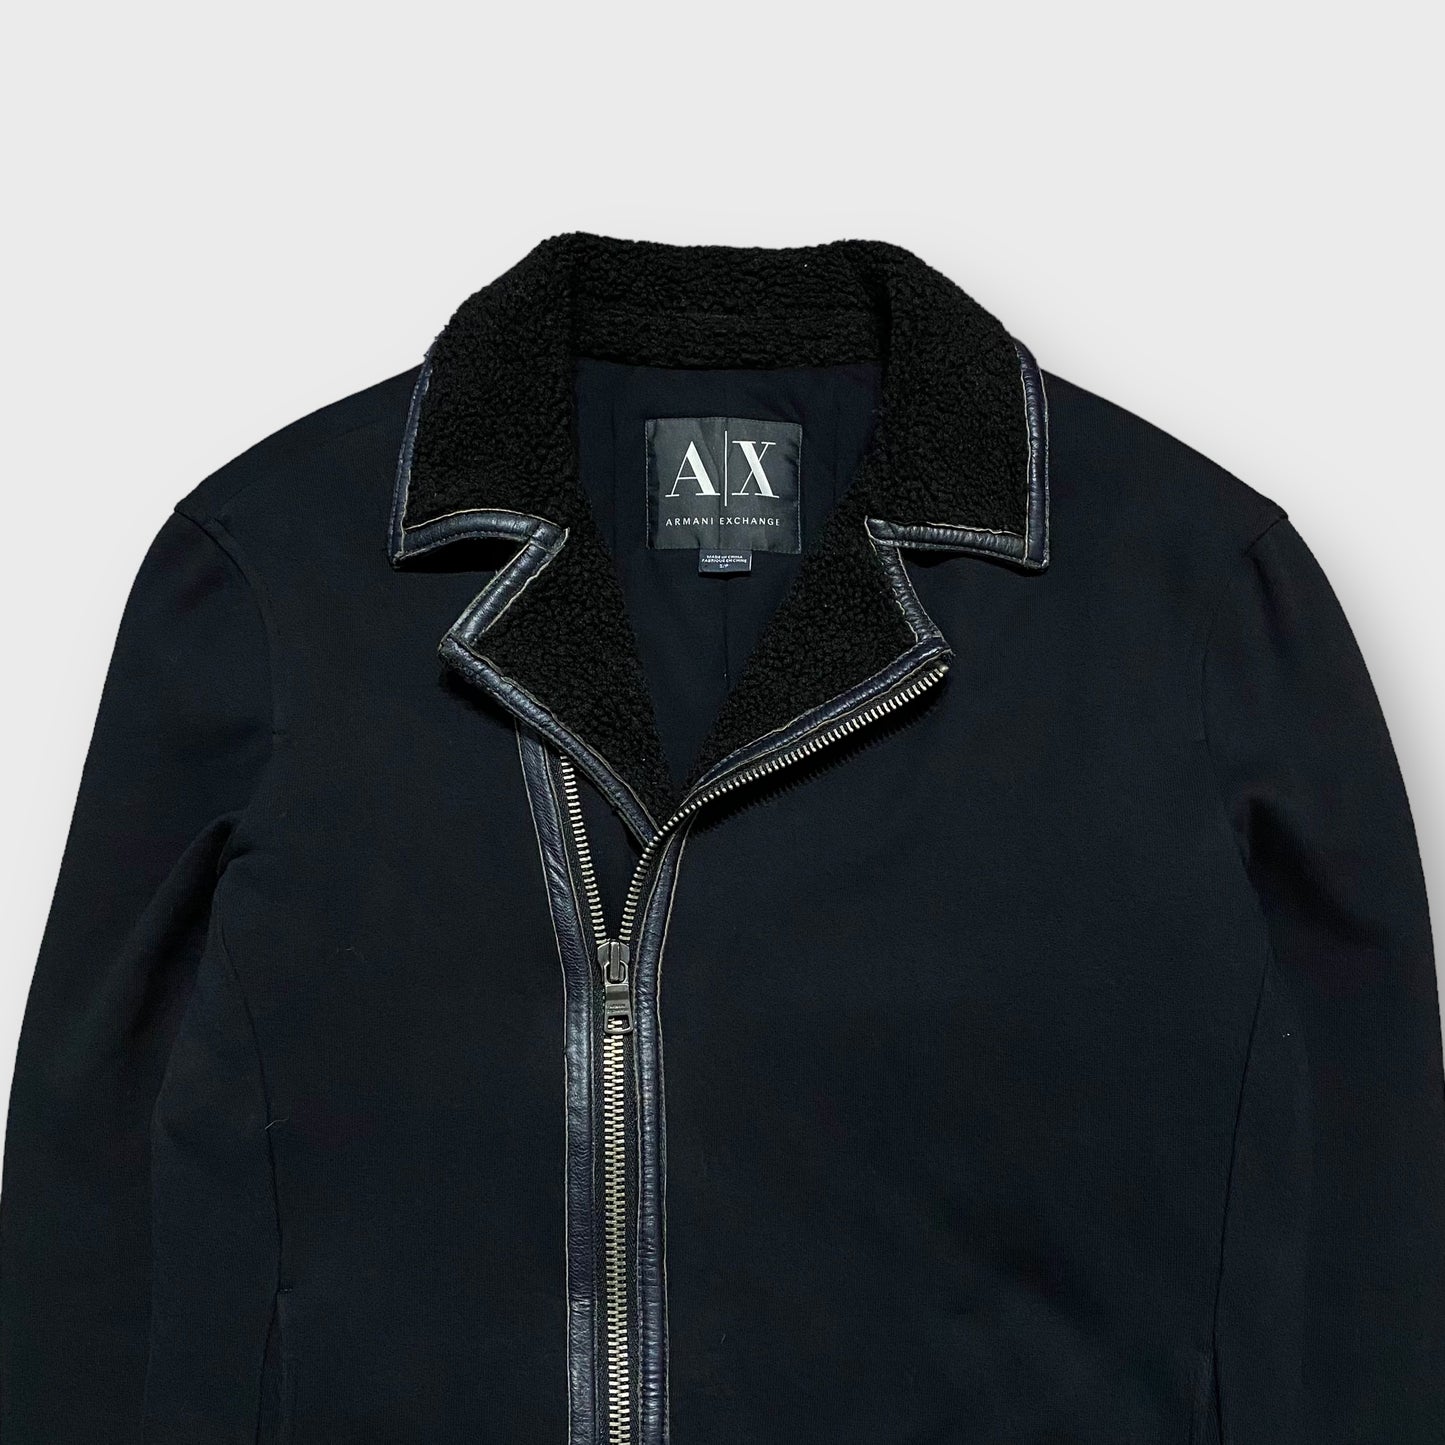 00's "ARMANI EXCHANGE" Zip gimmick cotton jacket